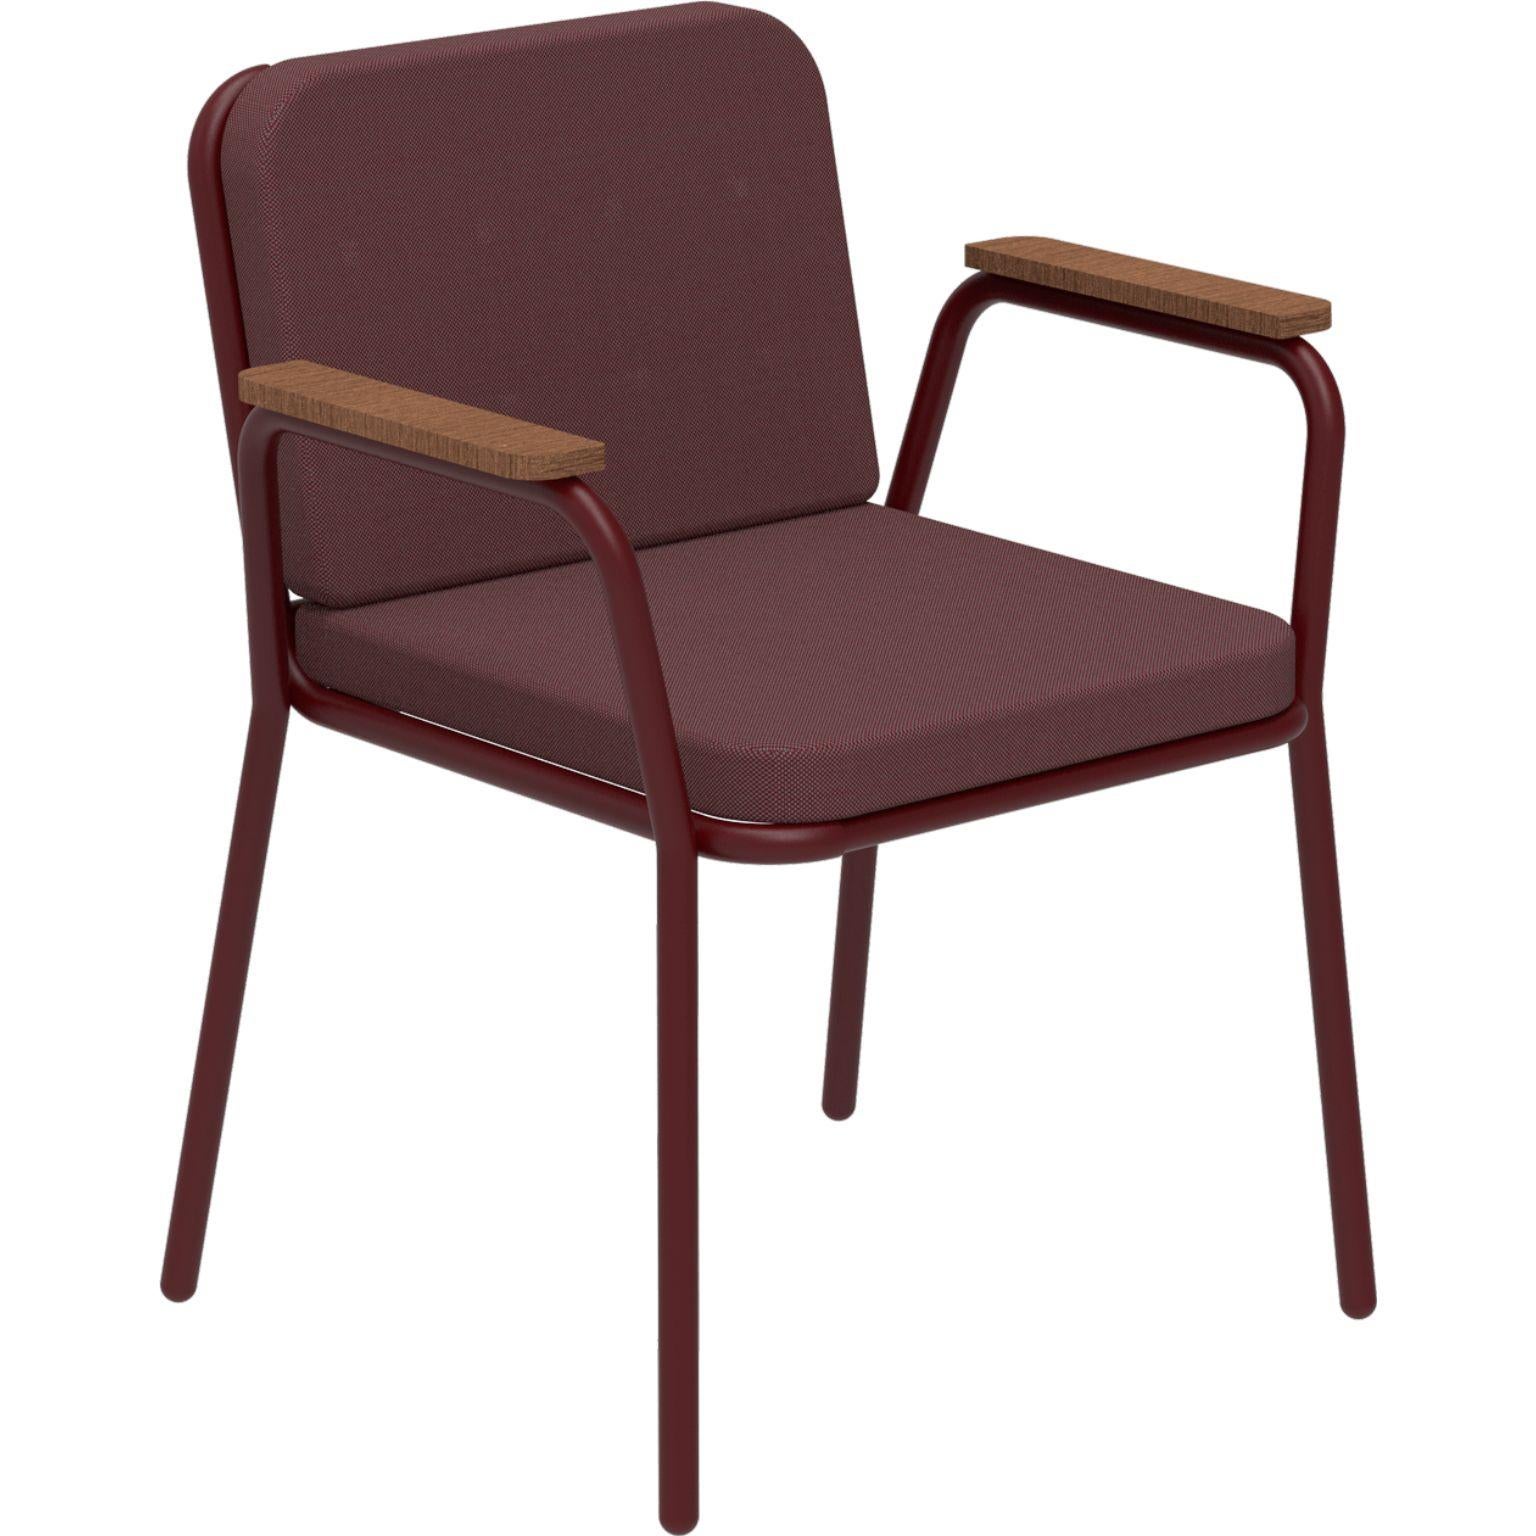 Nature Burgunderfarbener Sessel von MOWEE
Abmessungen: T60 x B67 x H83 cm (Sitzhöhe 42 cm).
MATERIAL: Aluminium, Polsterung und Iroko-Holz.
Gewicht: 5 kg.
Auch in verschiedenen Farben und Ausführungen erhältlich. Bitte kontaktieren Sie uns.

Eine